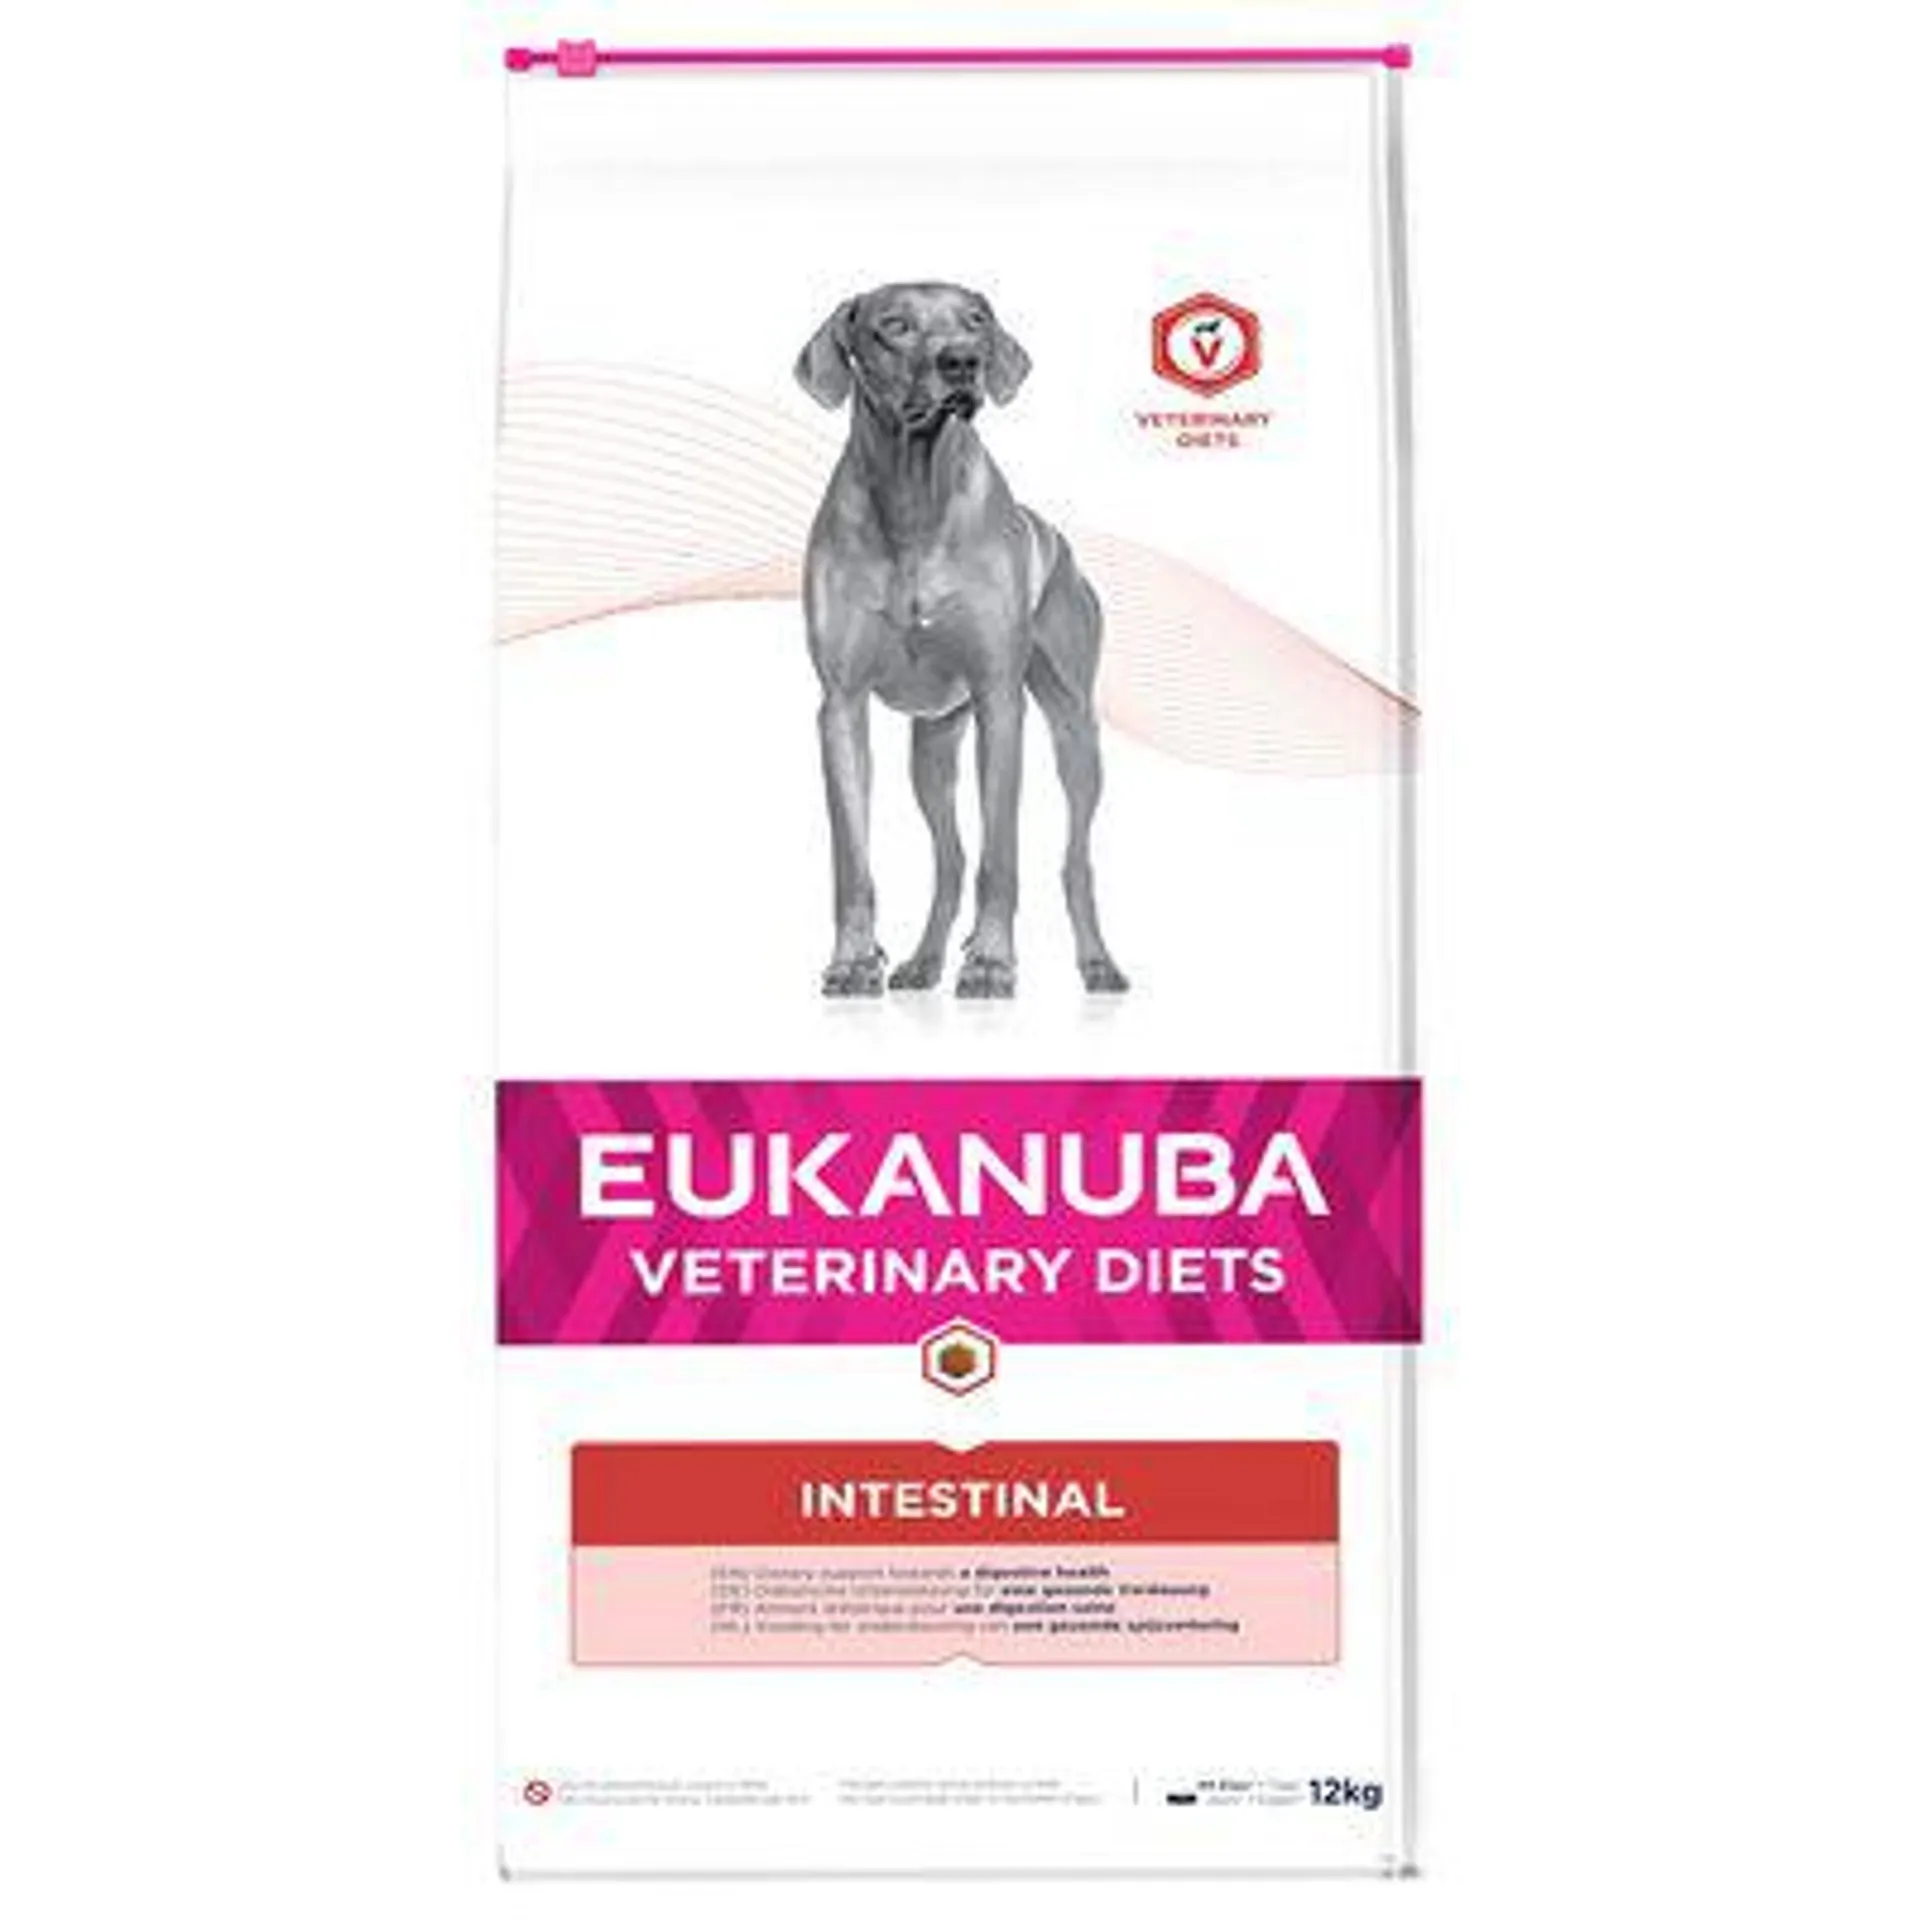 12kg Eukanuba Veterinary Diet Dry Dog Food - 10kg + 2kg Free! *